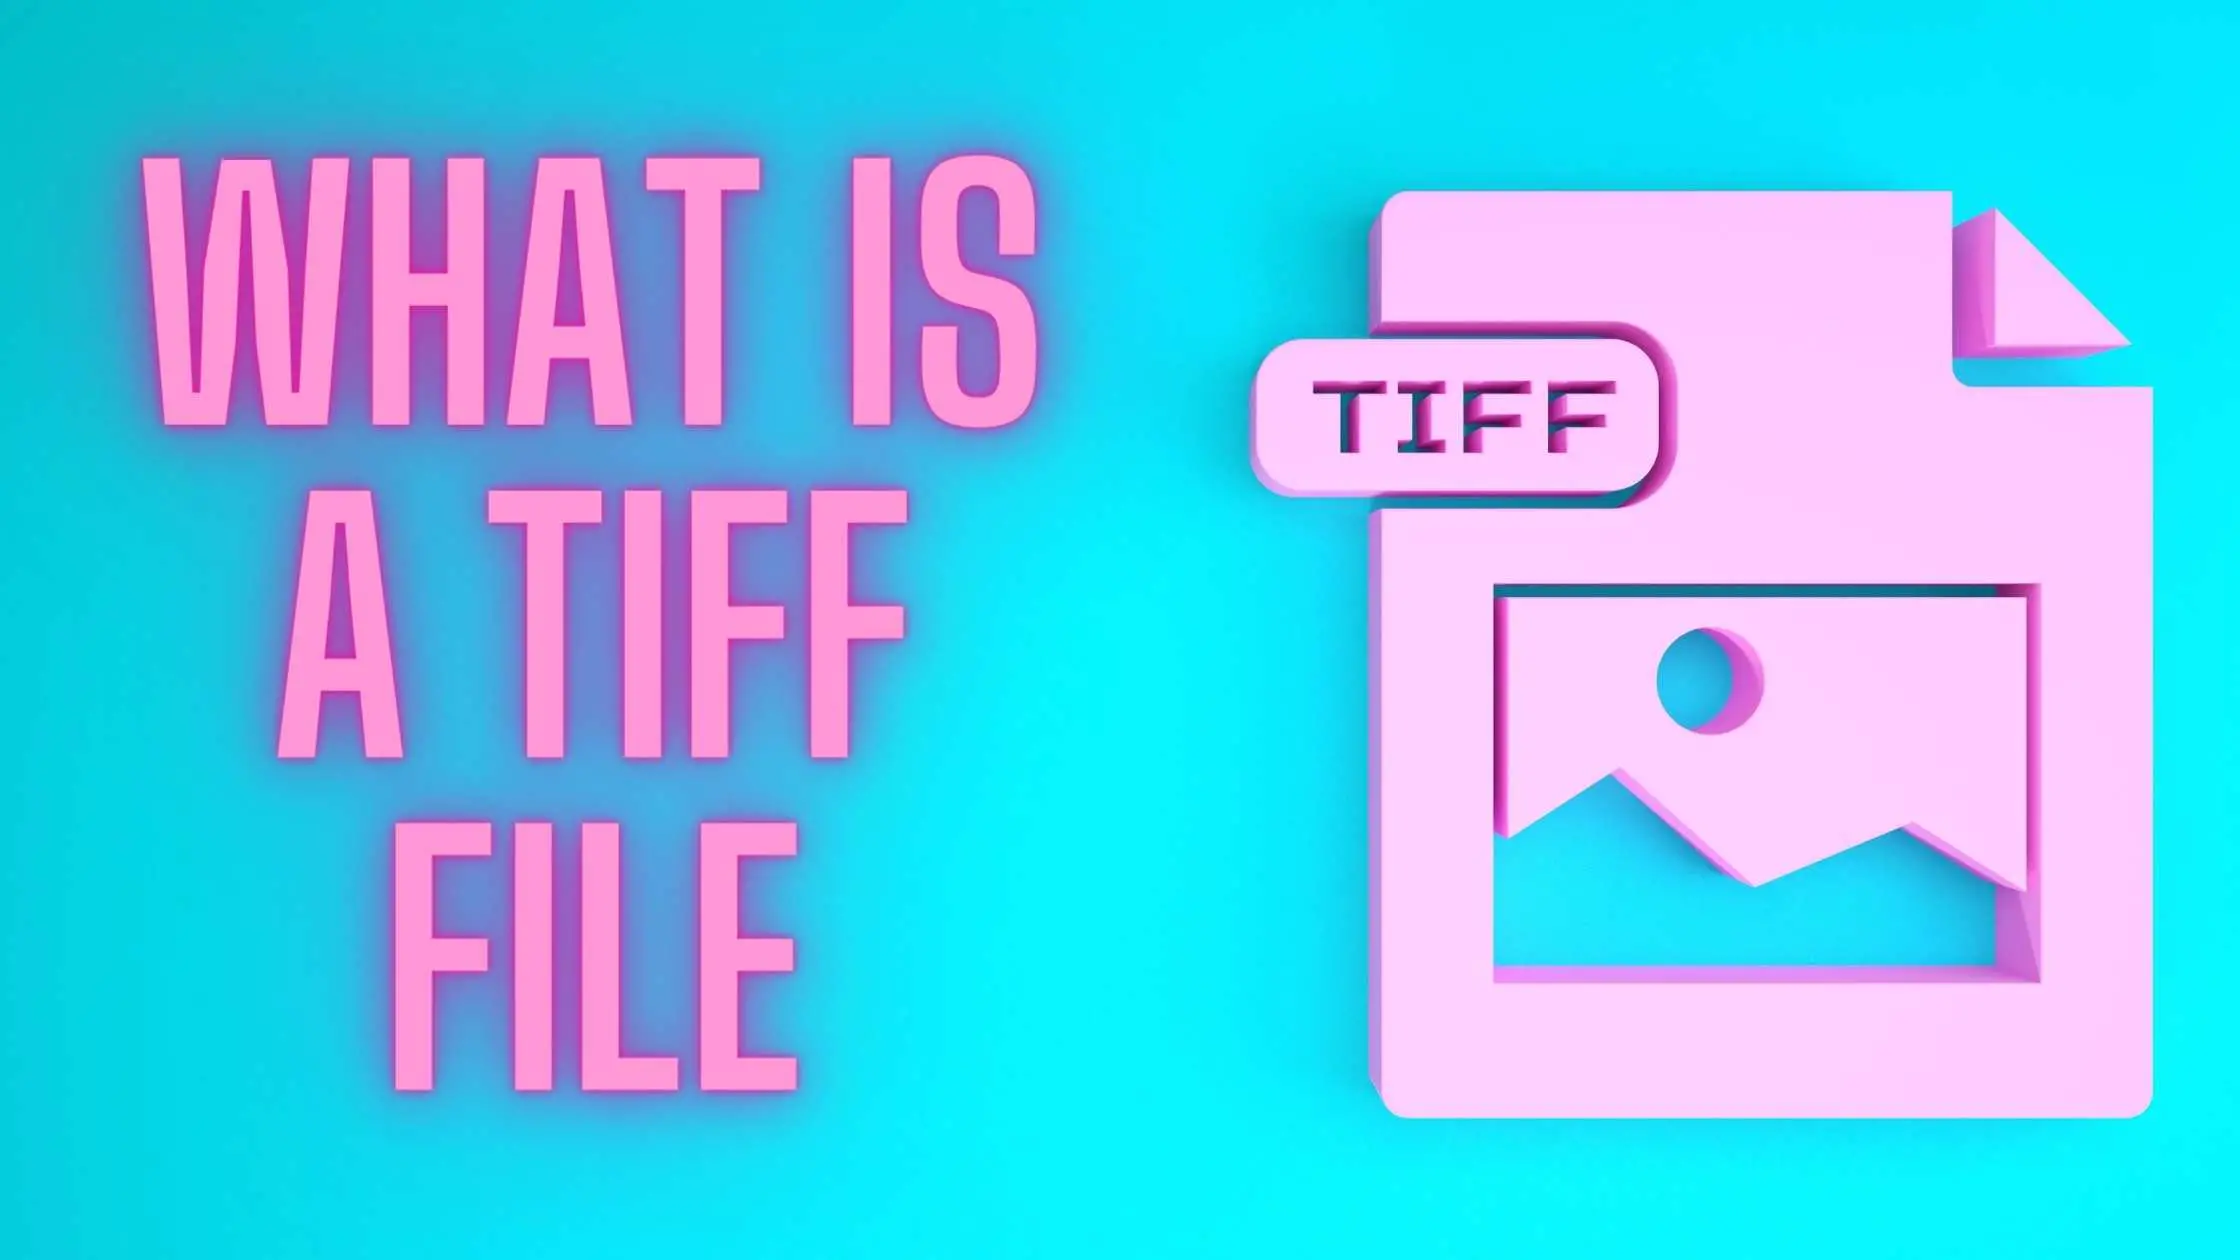 Сжать tiff. TIFF картинки. Фотографии TIFF. Сжать файл TIFF. Как снизить вес тифф файла.